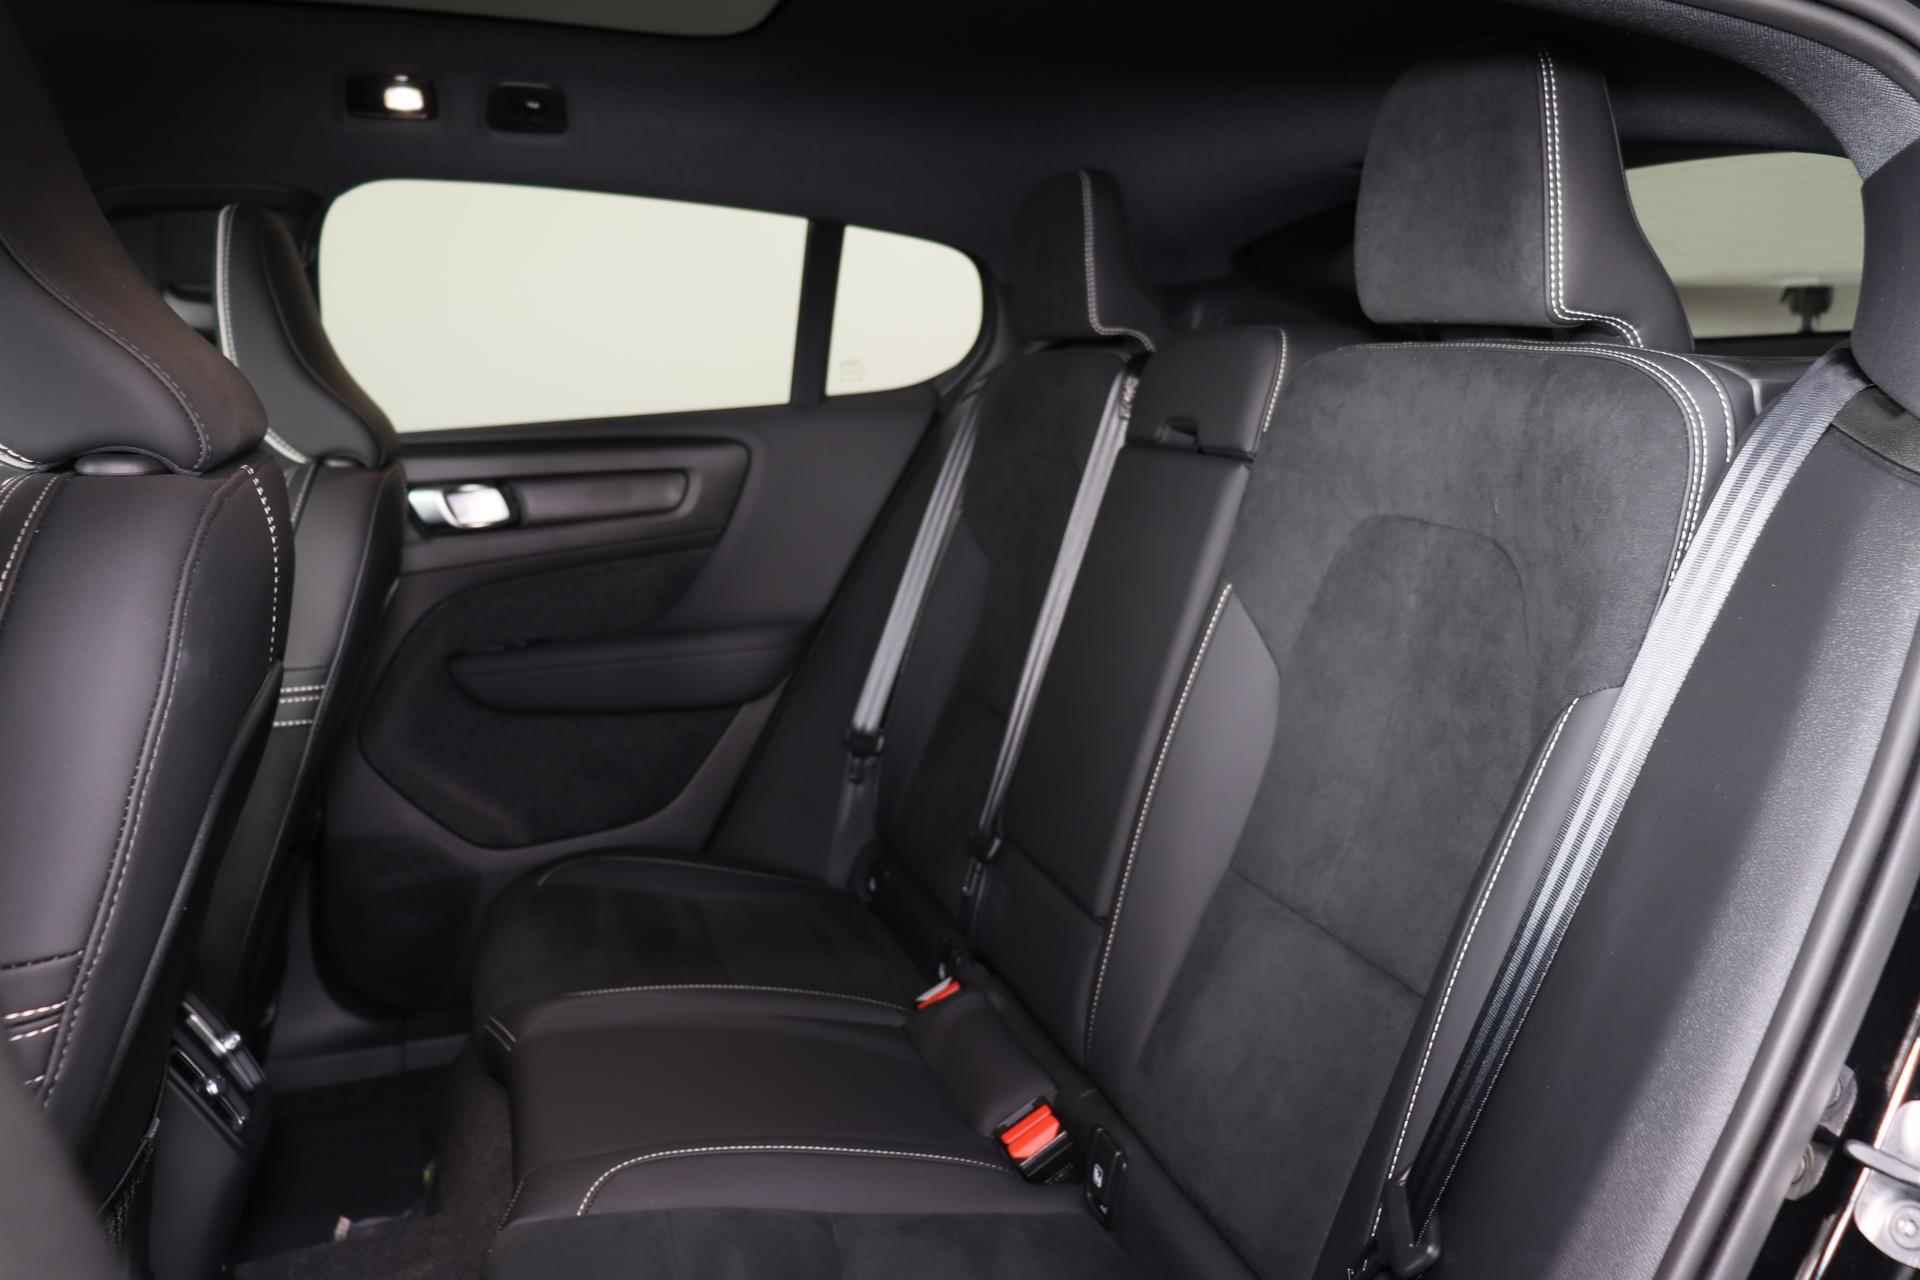 Volvo C40 Recharge Ultimate 69 kWh - Panoramadak - IntelliSafe Assist & Surround - Harman/Kardon audio - Verwarmde voorstoelen & stuur - Parkeersensoren voor & achter - Elektr. bedienb. voorstoelen met links geheugen - Draadloze tel. lader - Warmtepomp - Extra getint glas - 20' LMV - 23/25